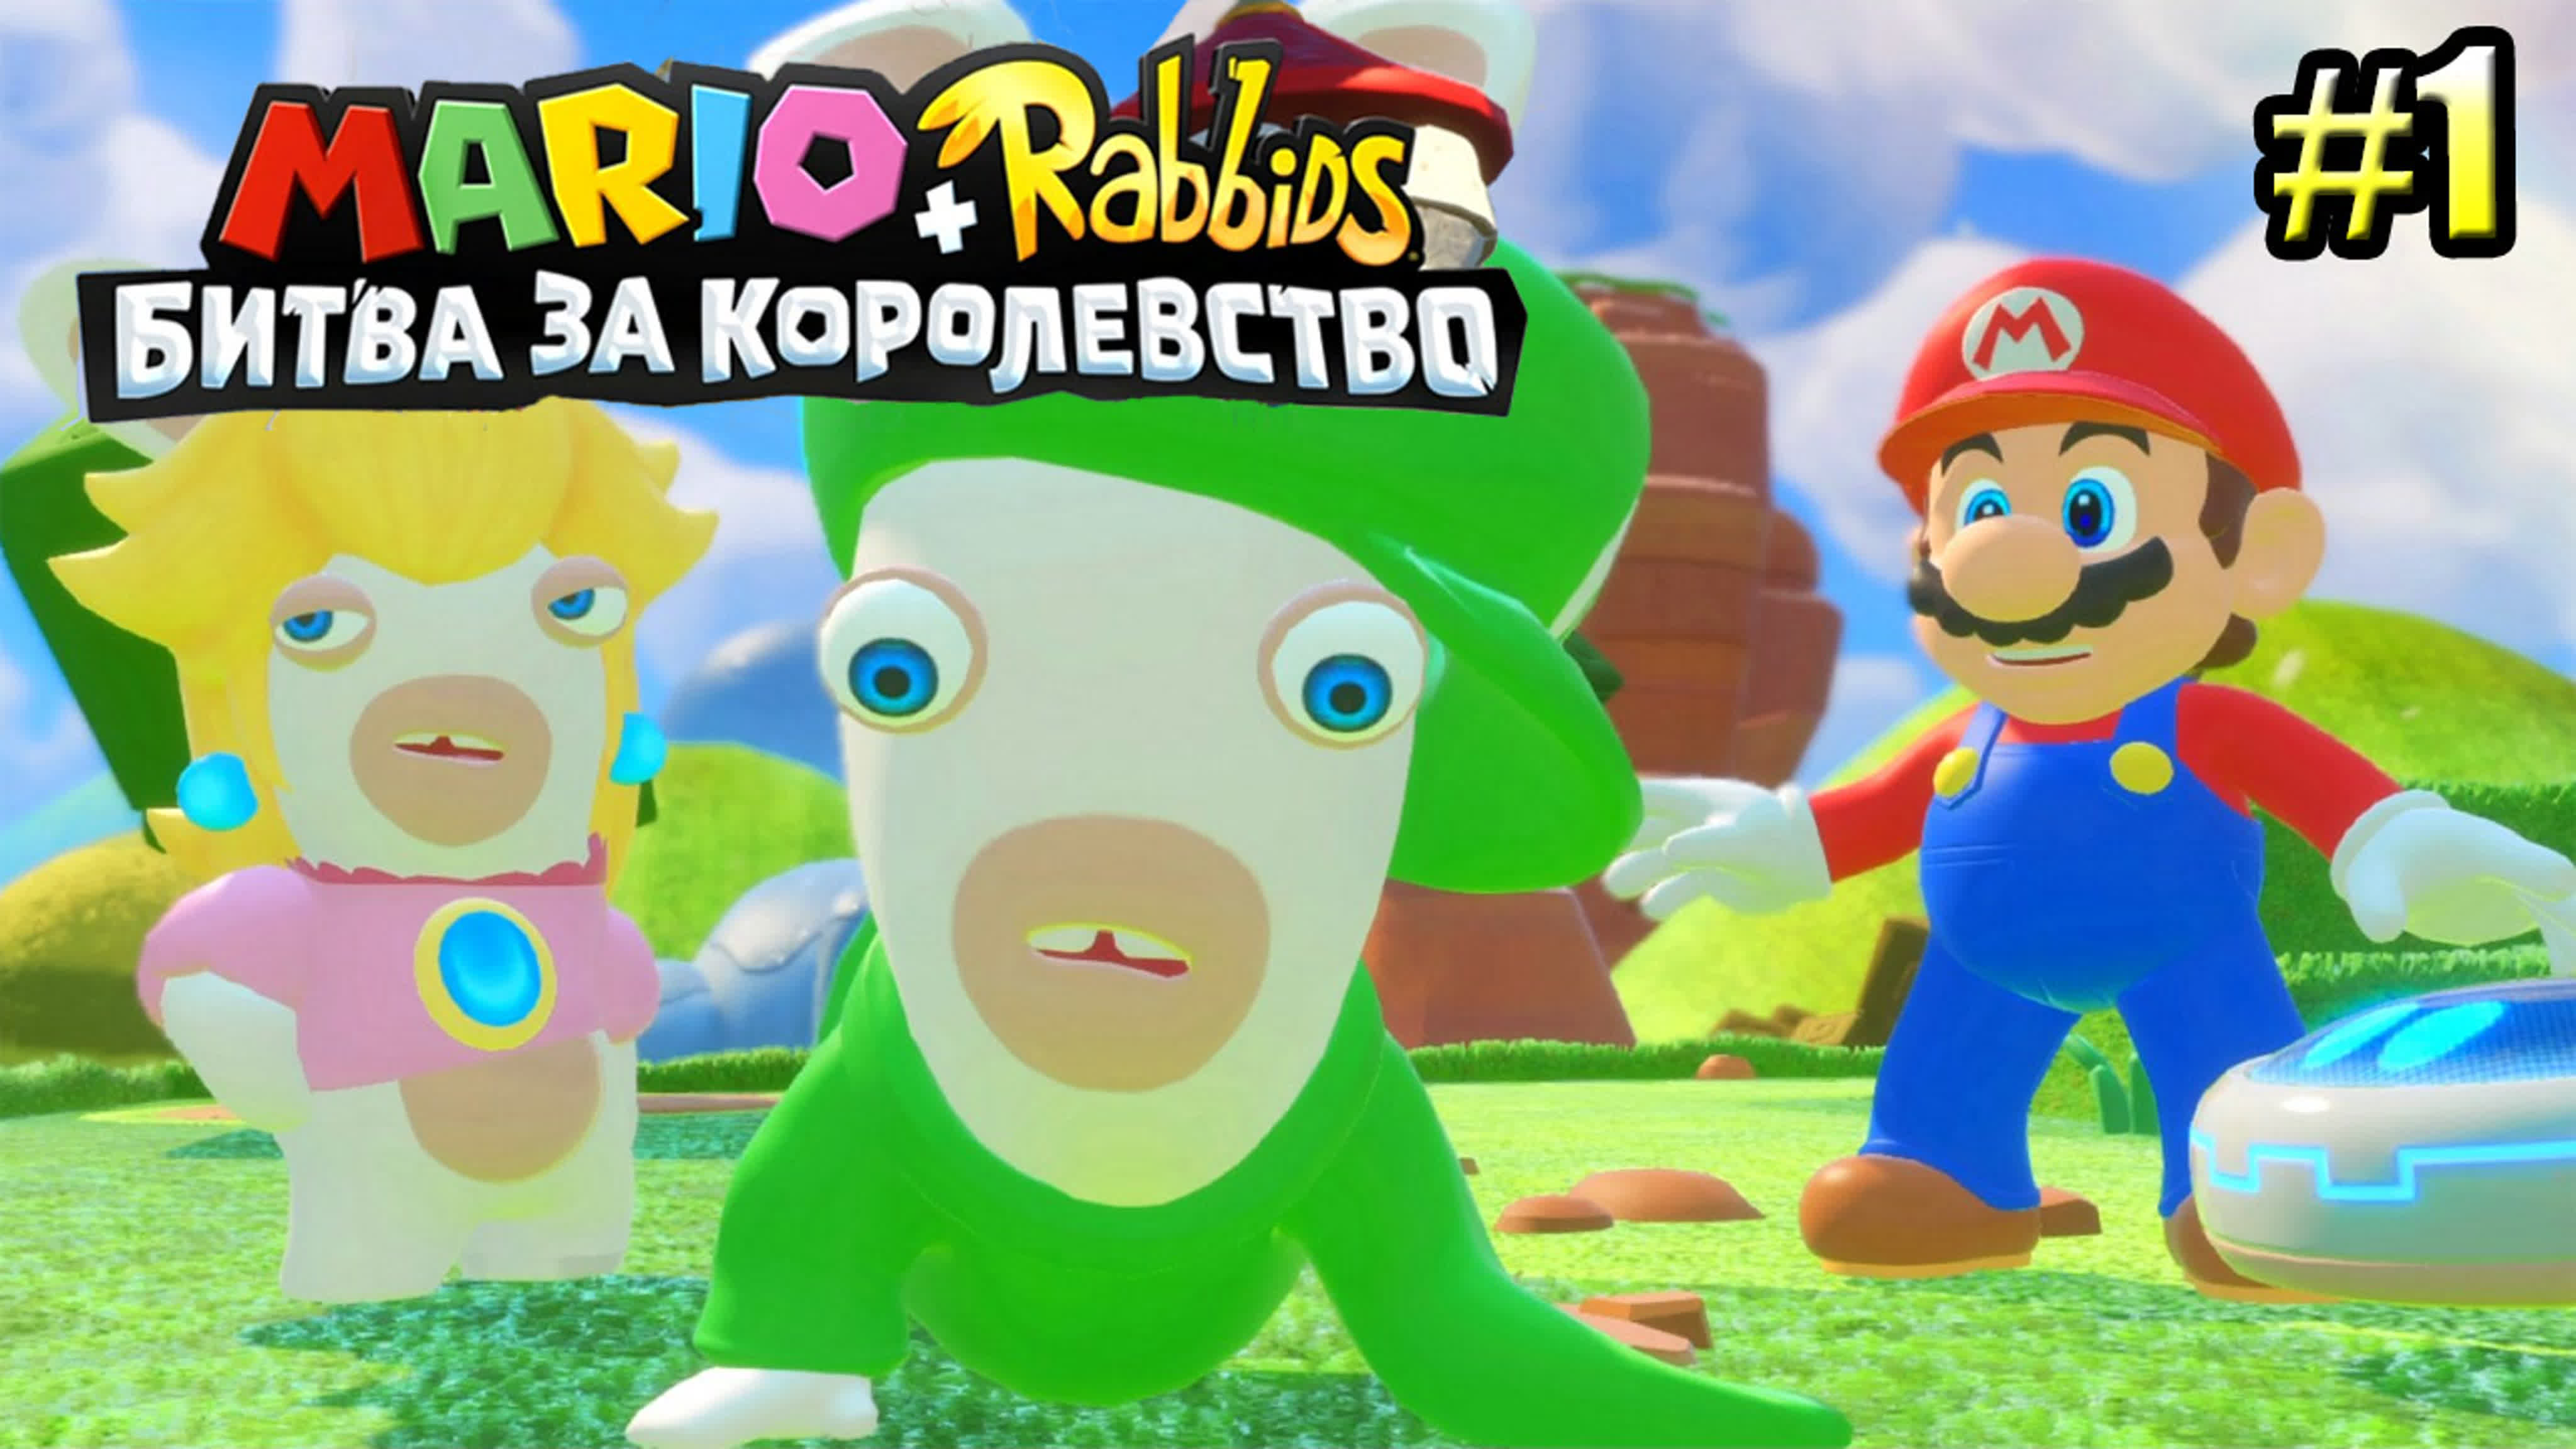 Mario + Rabbids Битва За Королевство (Switch)